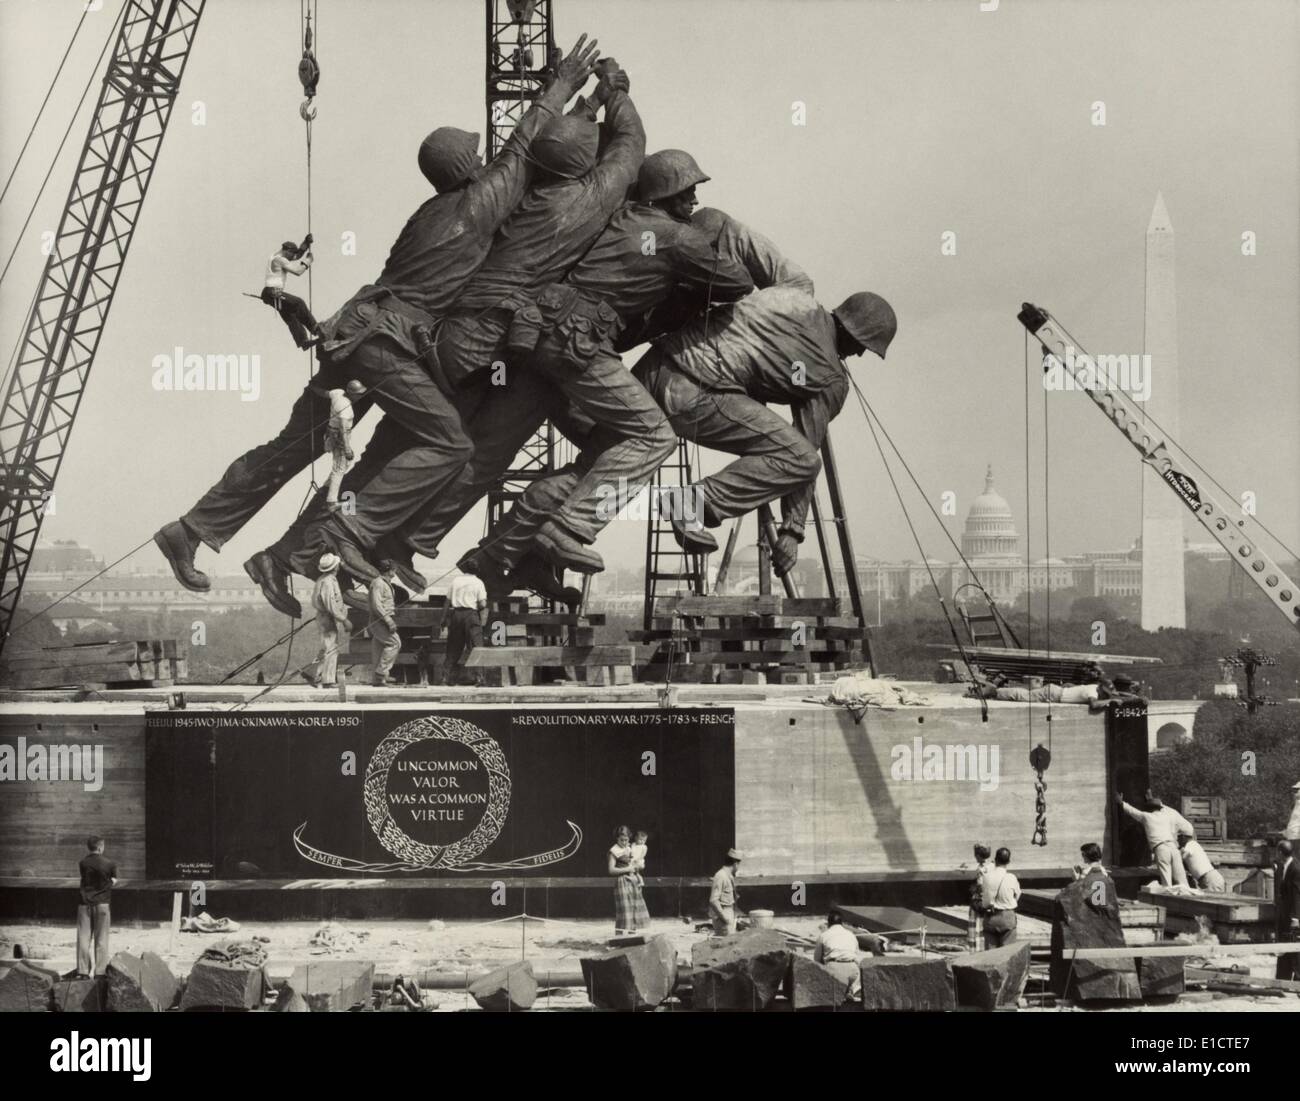 La statue représentant le placement des marines le drapeau américain sur le mont Suribachi, Iwo Jima. Sculpture pour le milieu marin. Banque D'Images